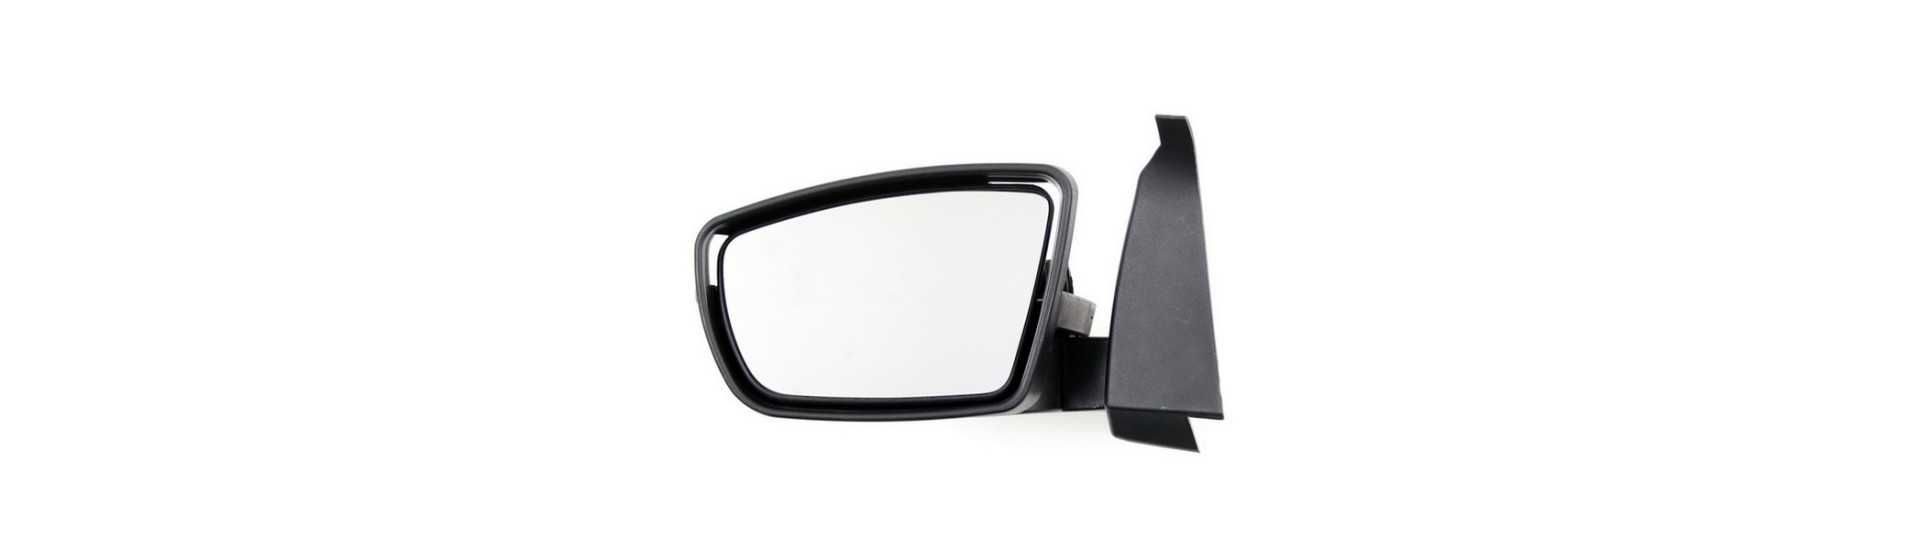 Bil rearview spegel och spegel utan tillstånd